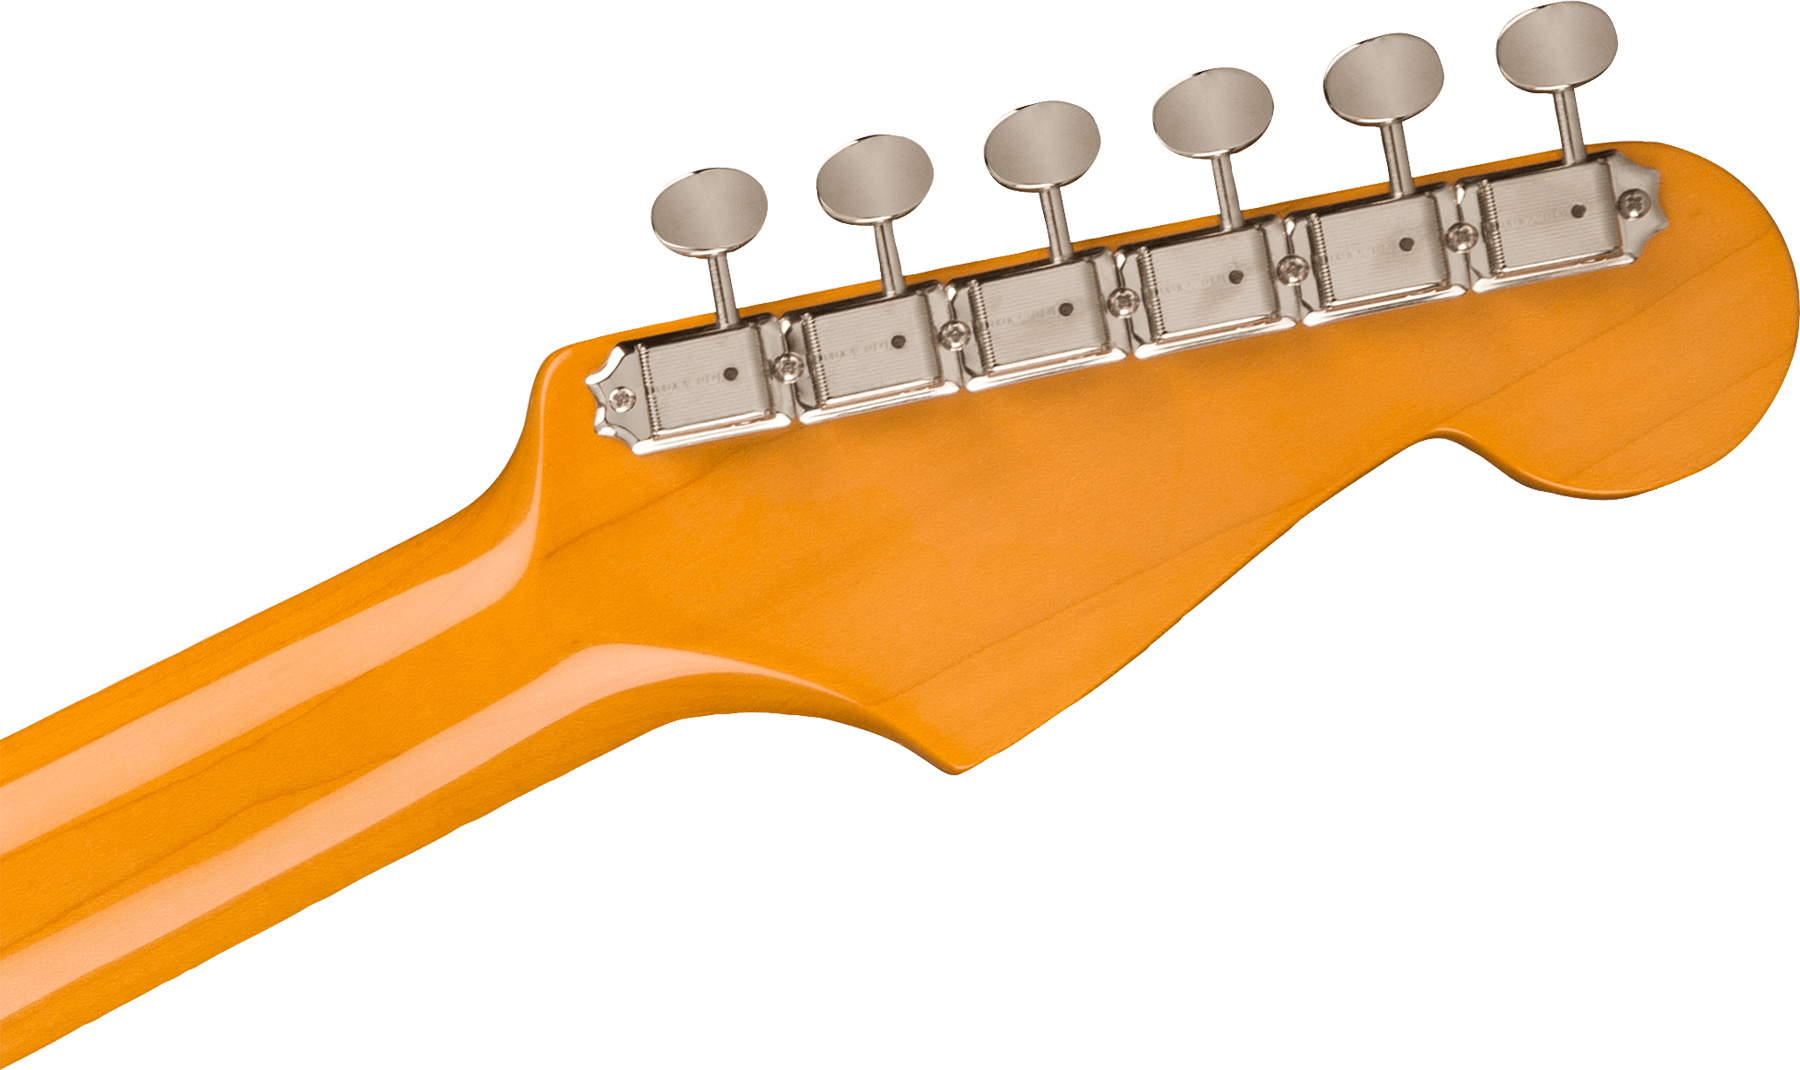 Fender Strat 1961 American Vintage Ii Lh Gaucher Usa 3s Trem Rw - Olympic White - Linkshandige elektrische gitaar - Variation 3